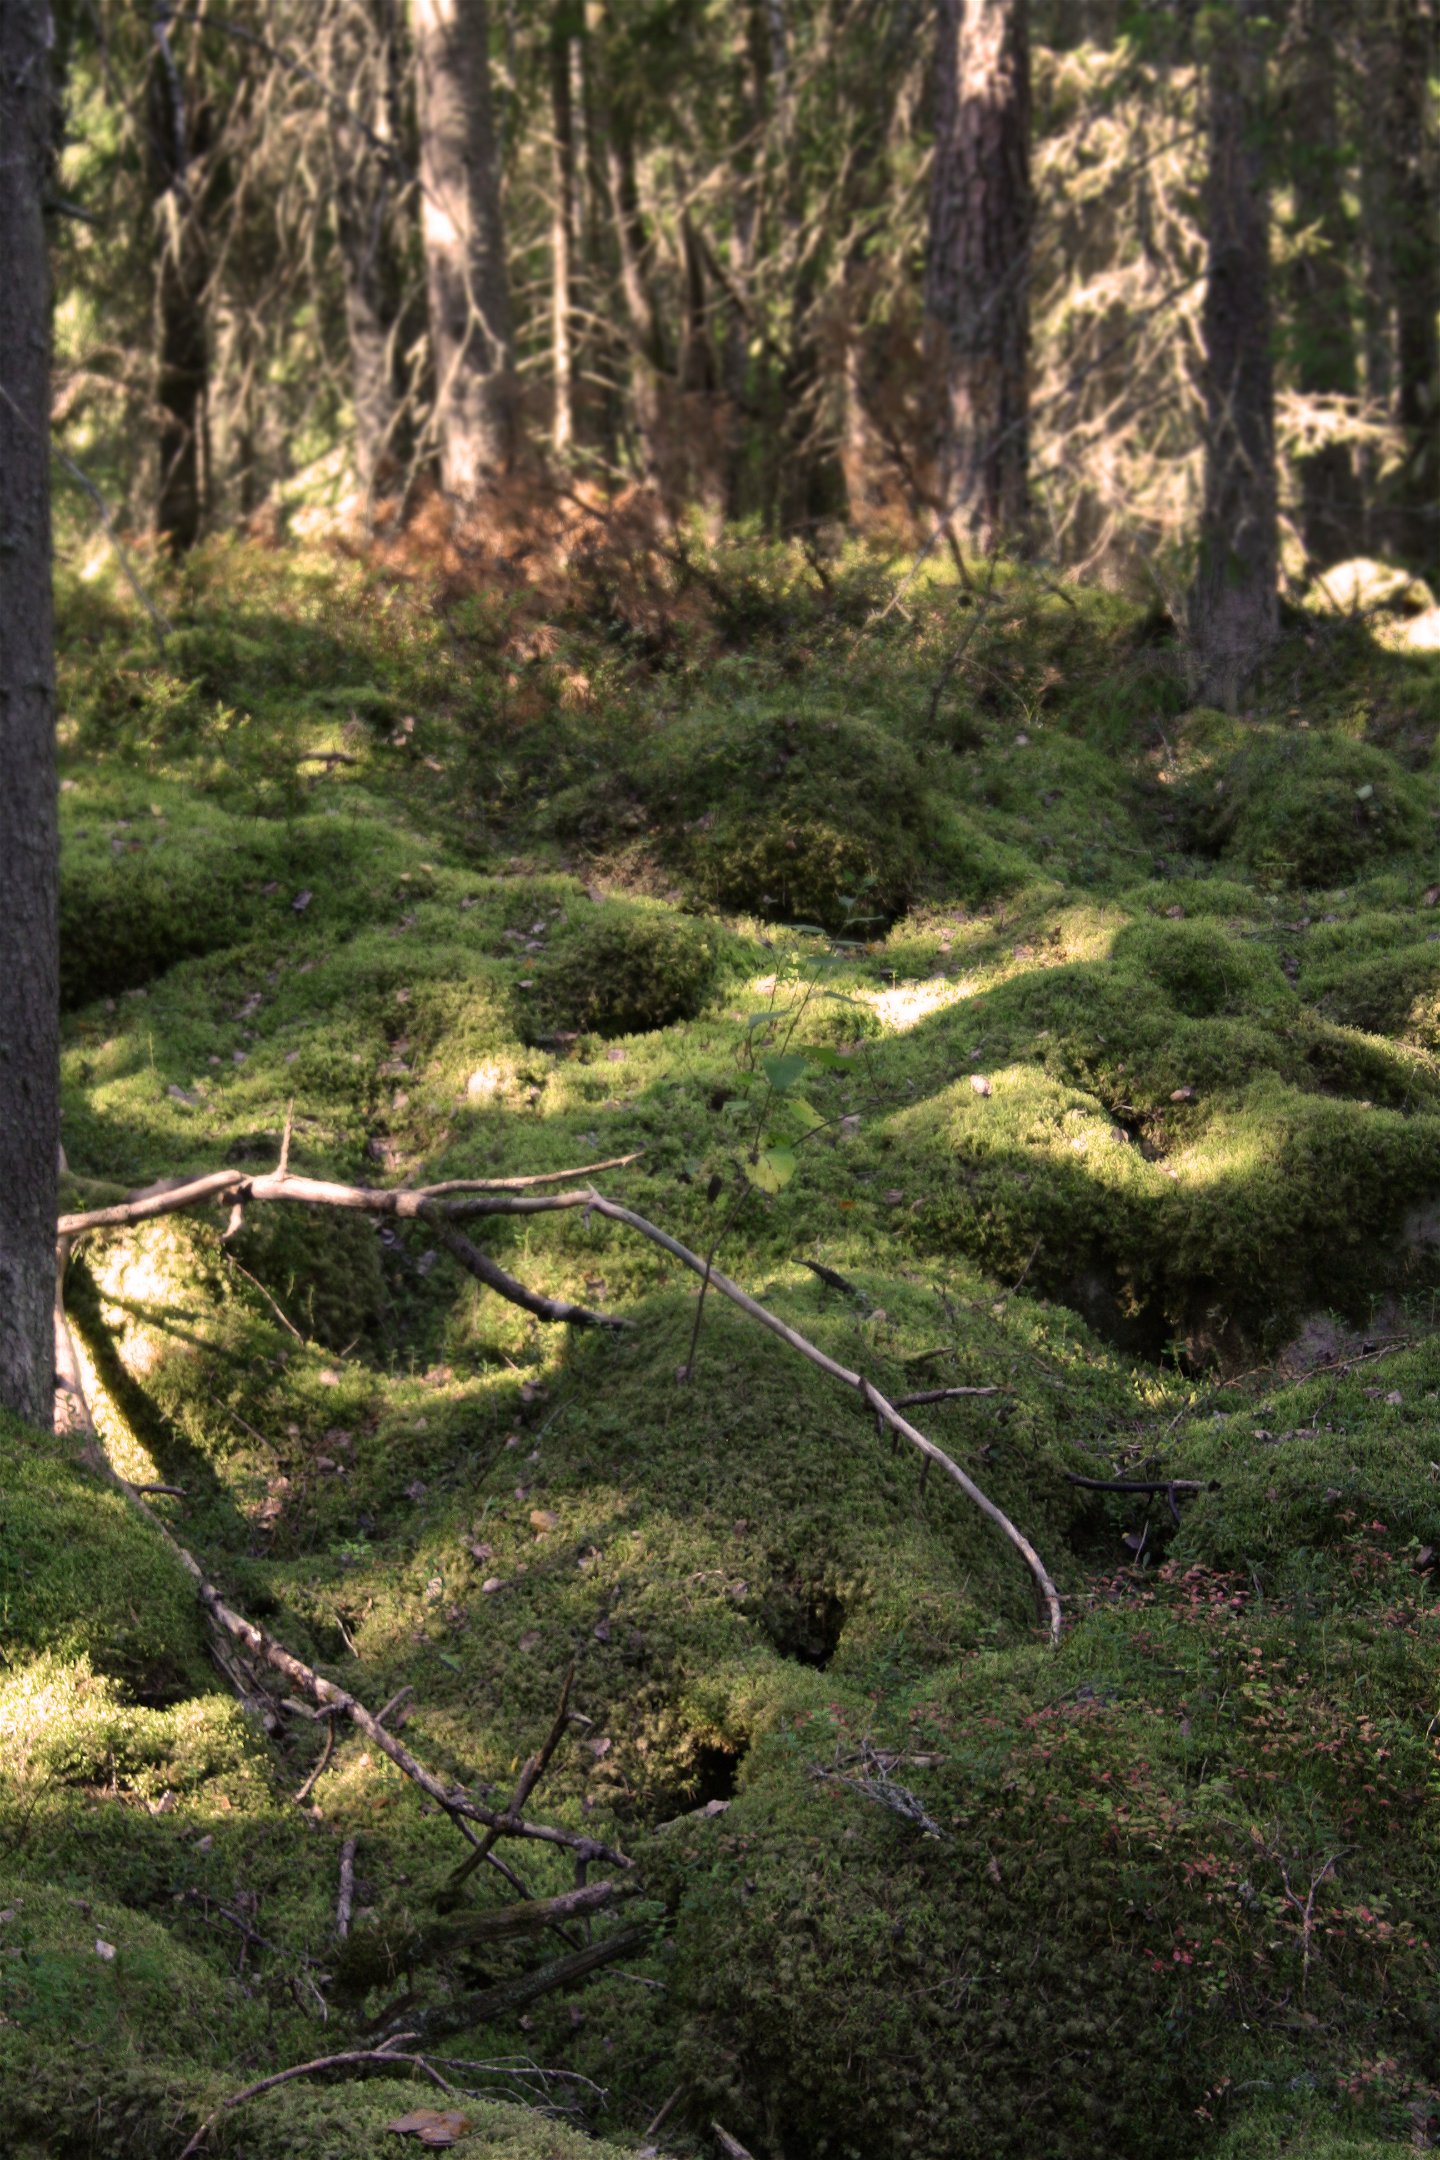 En skog med mycket ojämn terräng som består av mosstäckta stenar.